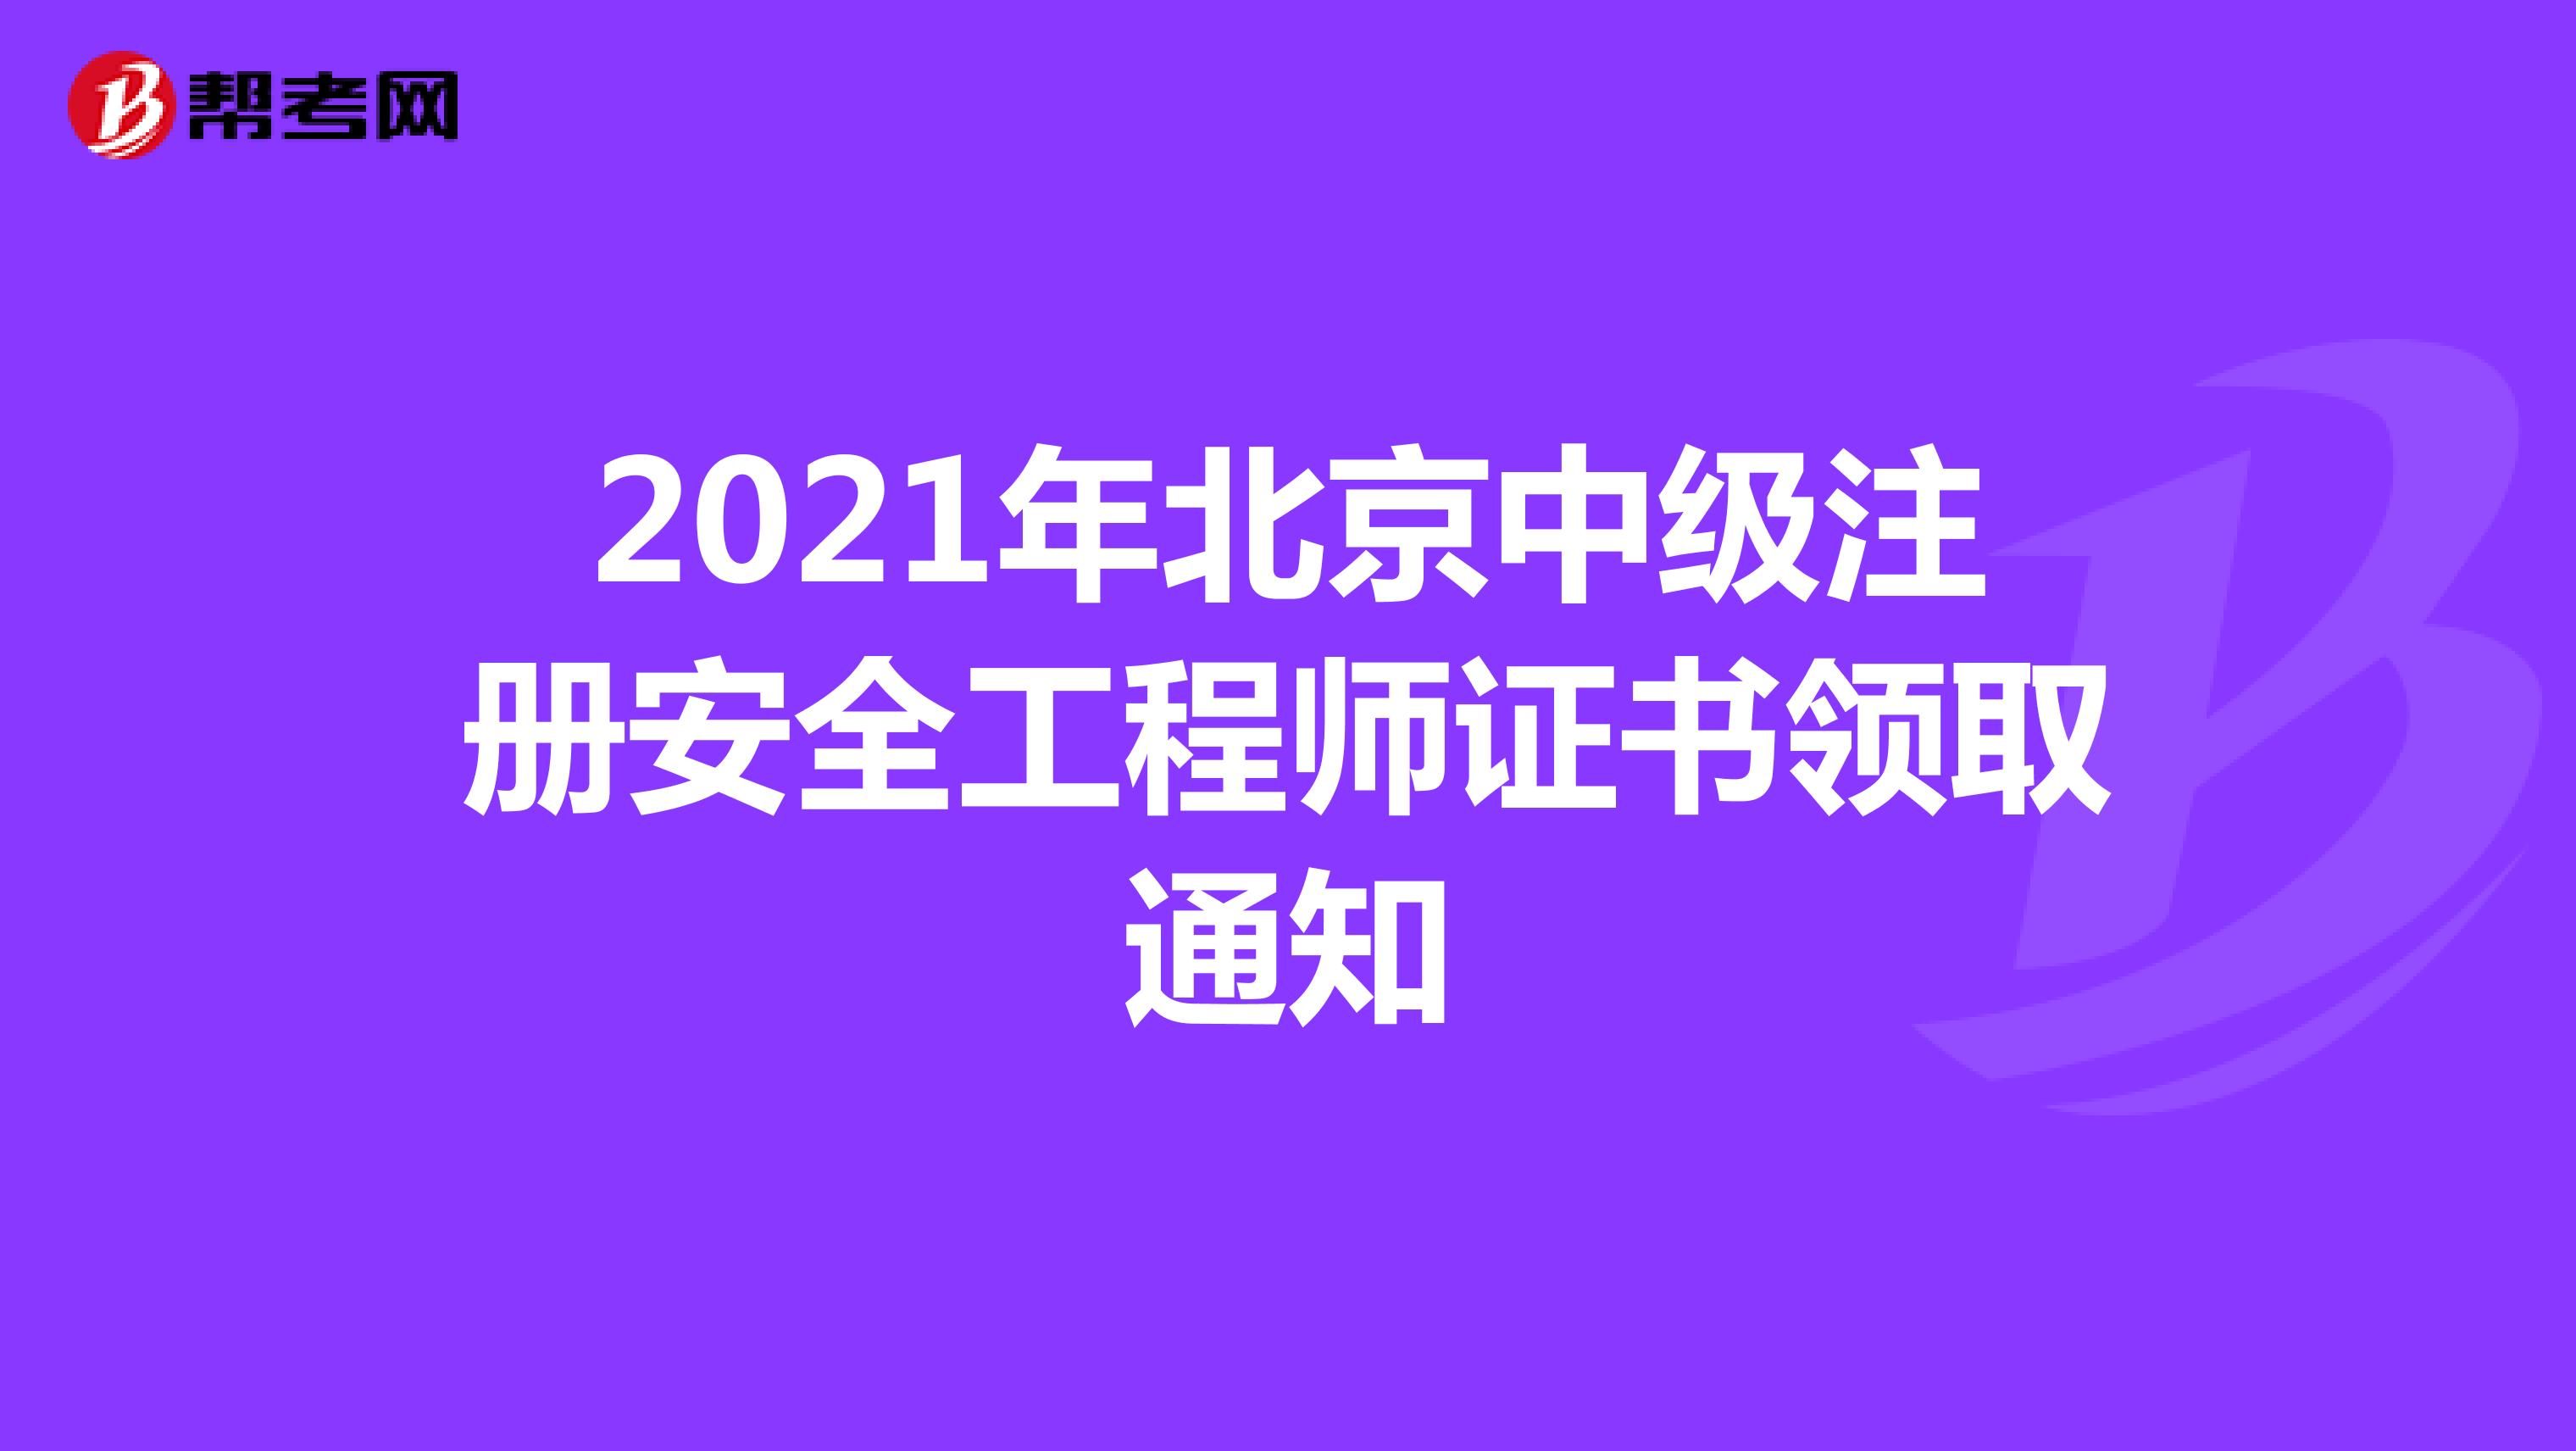 2021年北京中级注册安全工程师证书领取通知